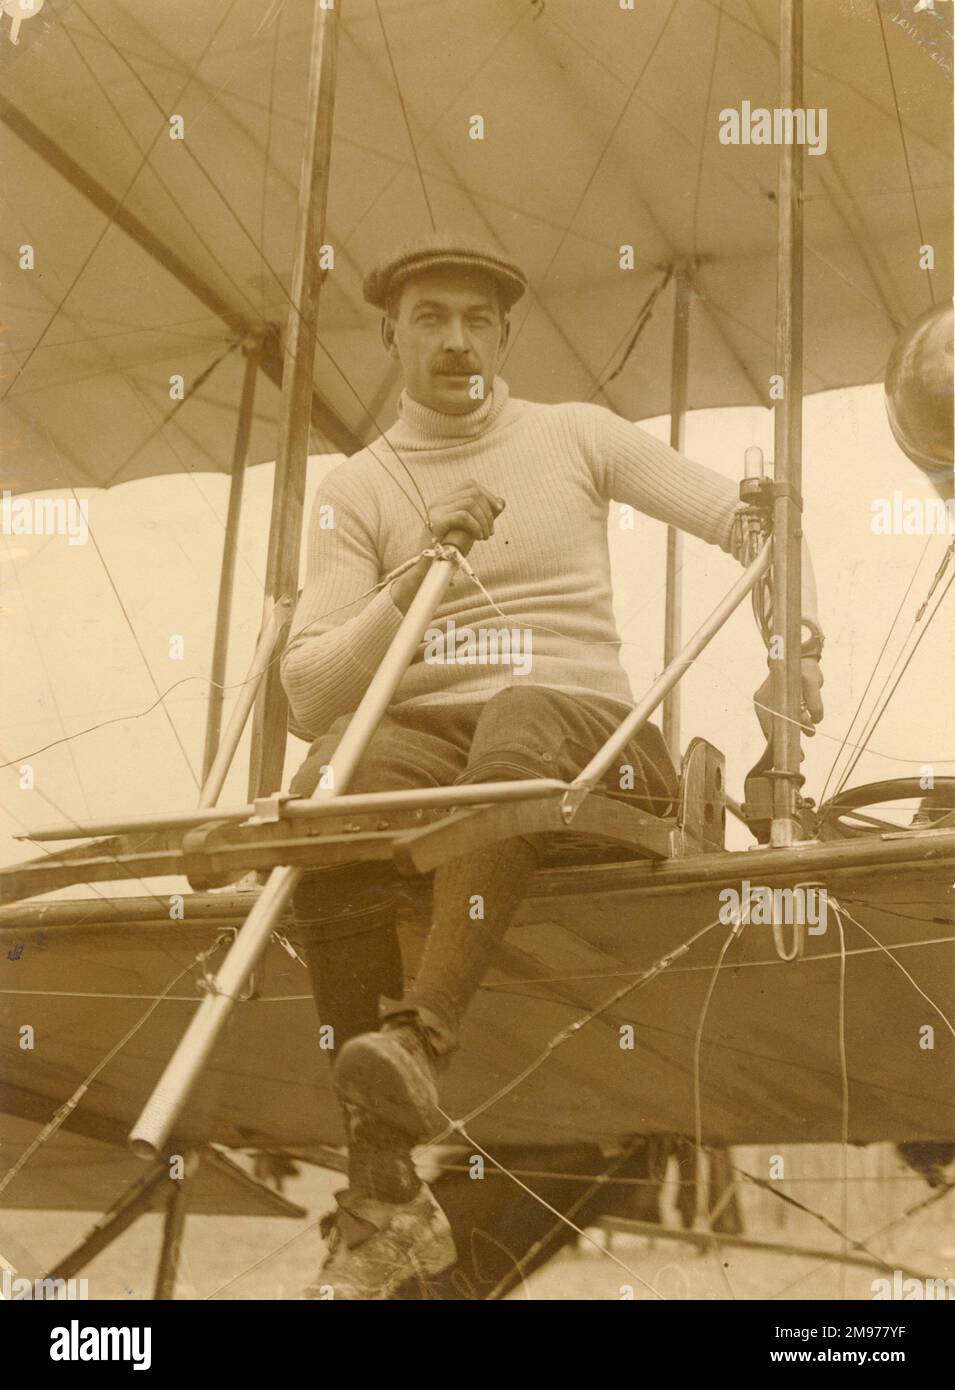 De Petrovsky sur son Somner biplan lors de la réunion de Reims Aviation. Banque D'Images